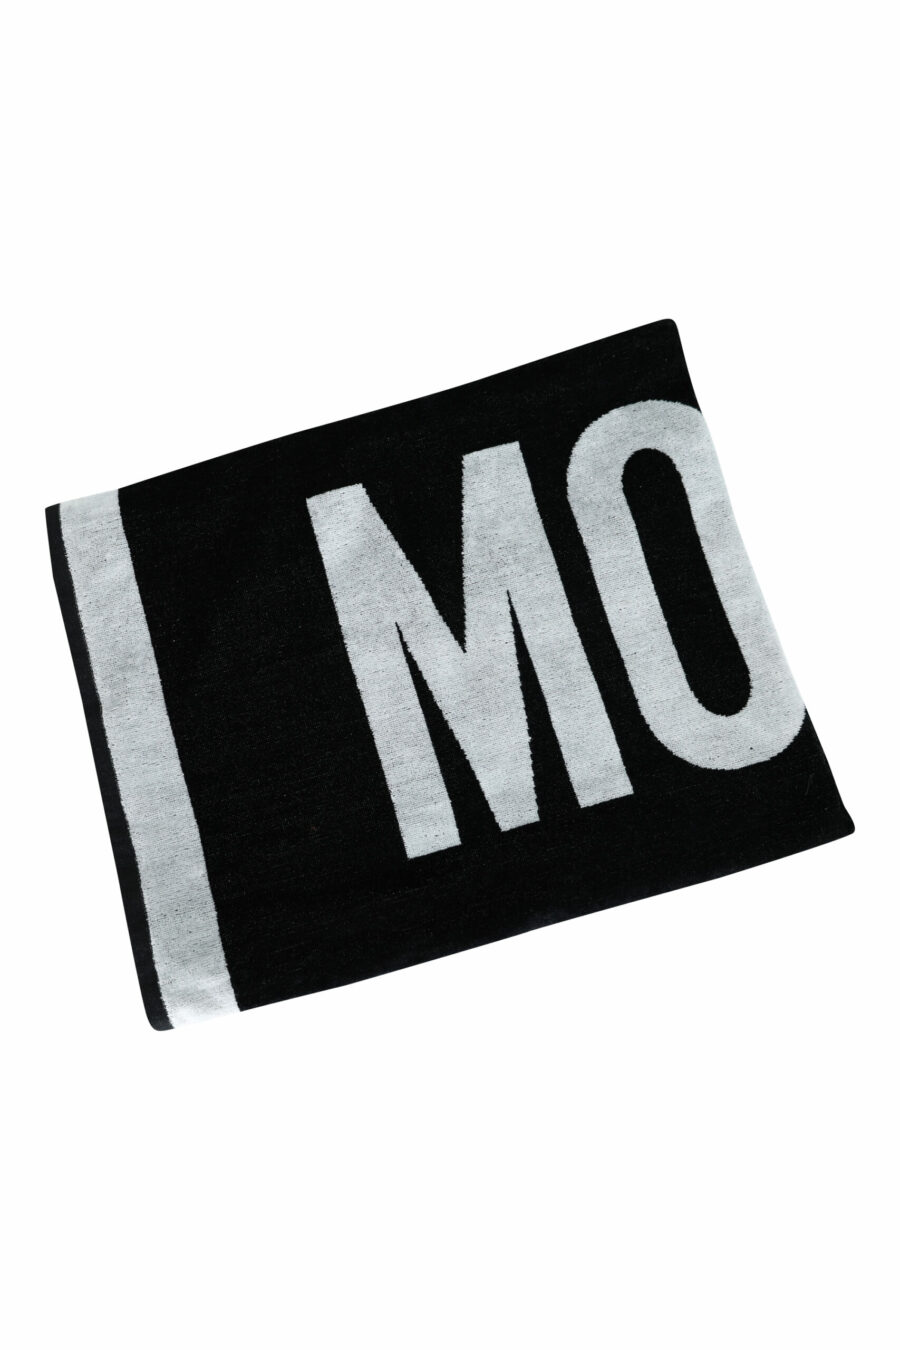 Serviette noire avec logo blanc et maxilogo - 667113638614 scaled